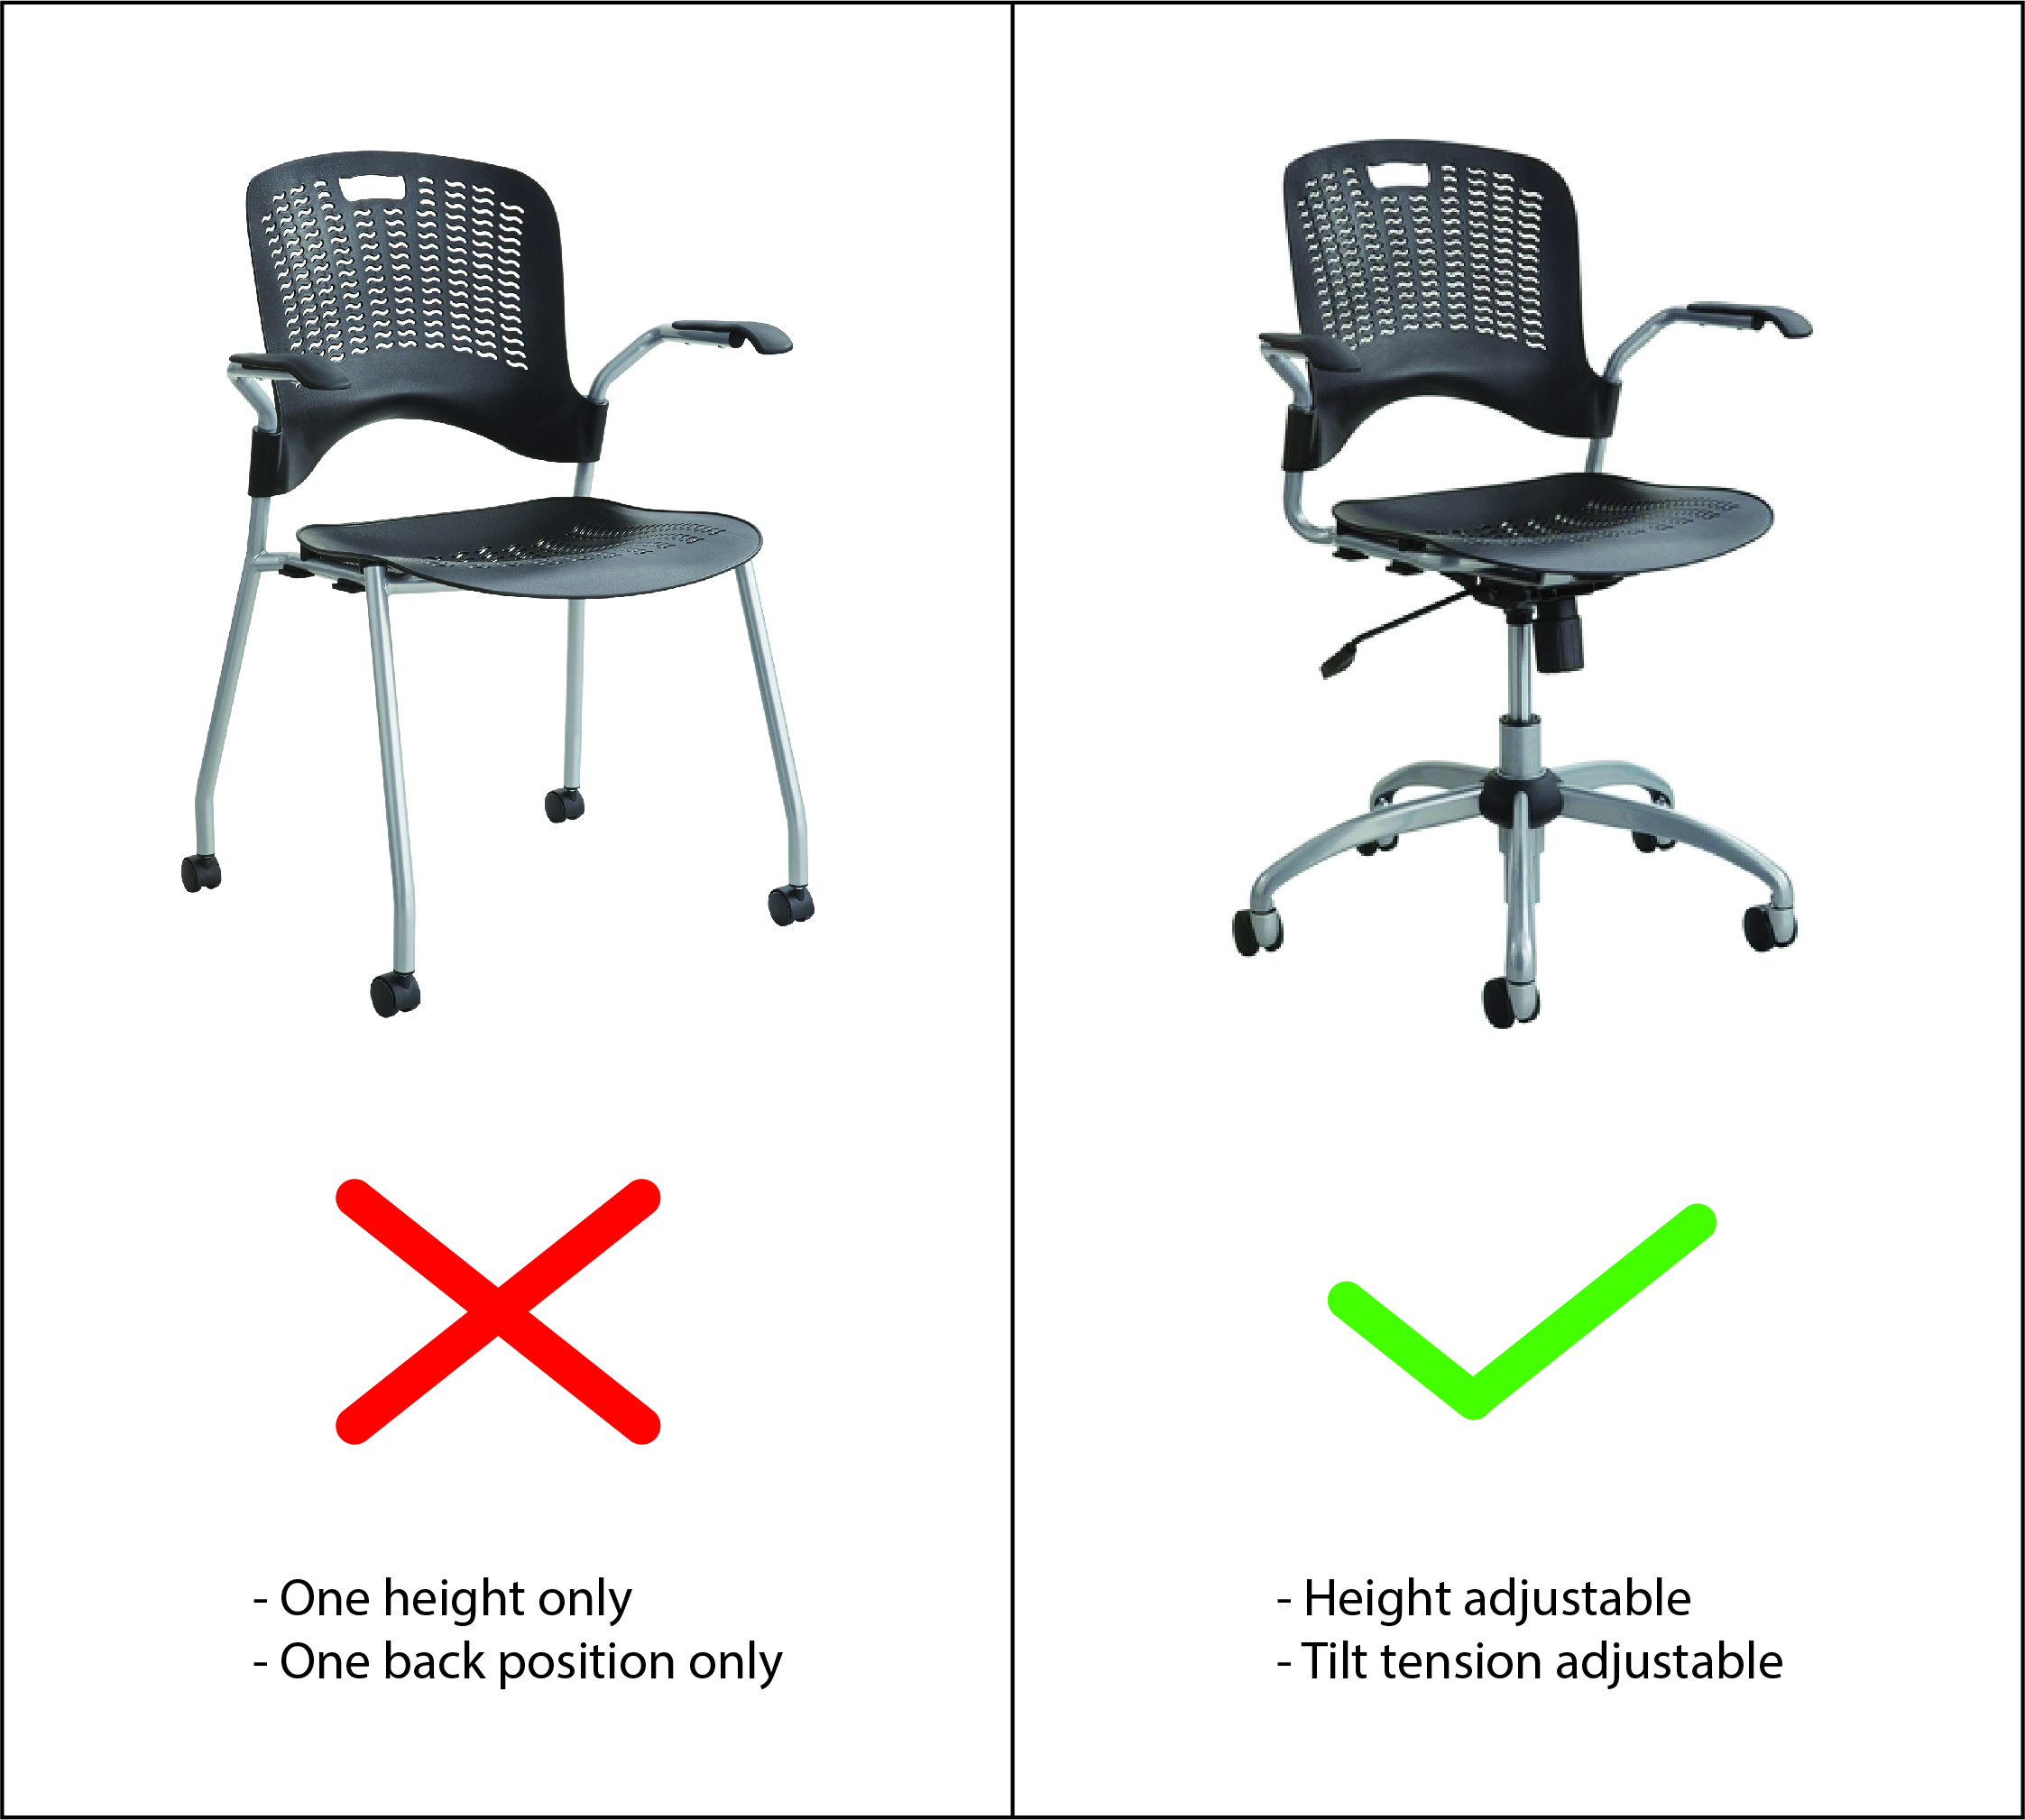 chairs-01.jpg